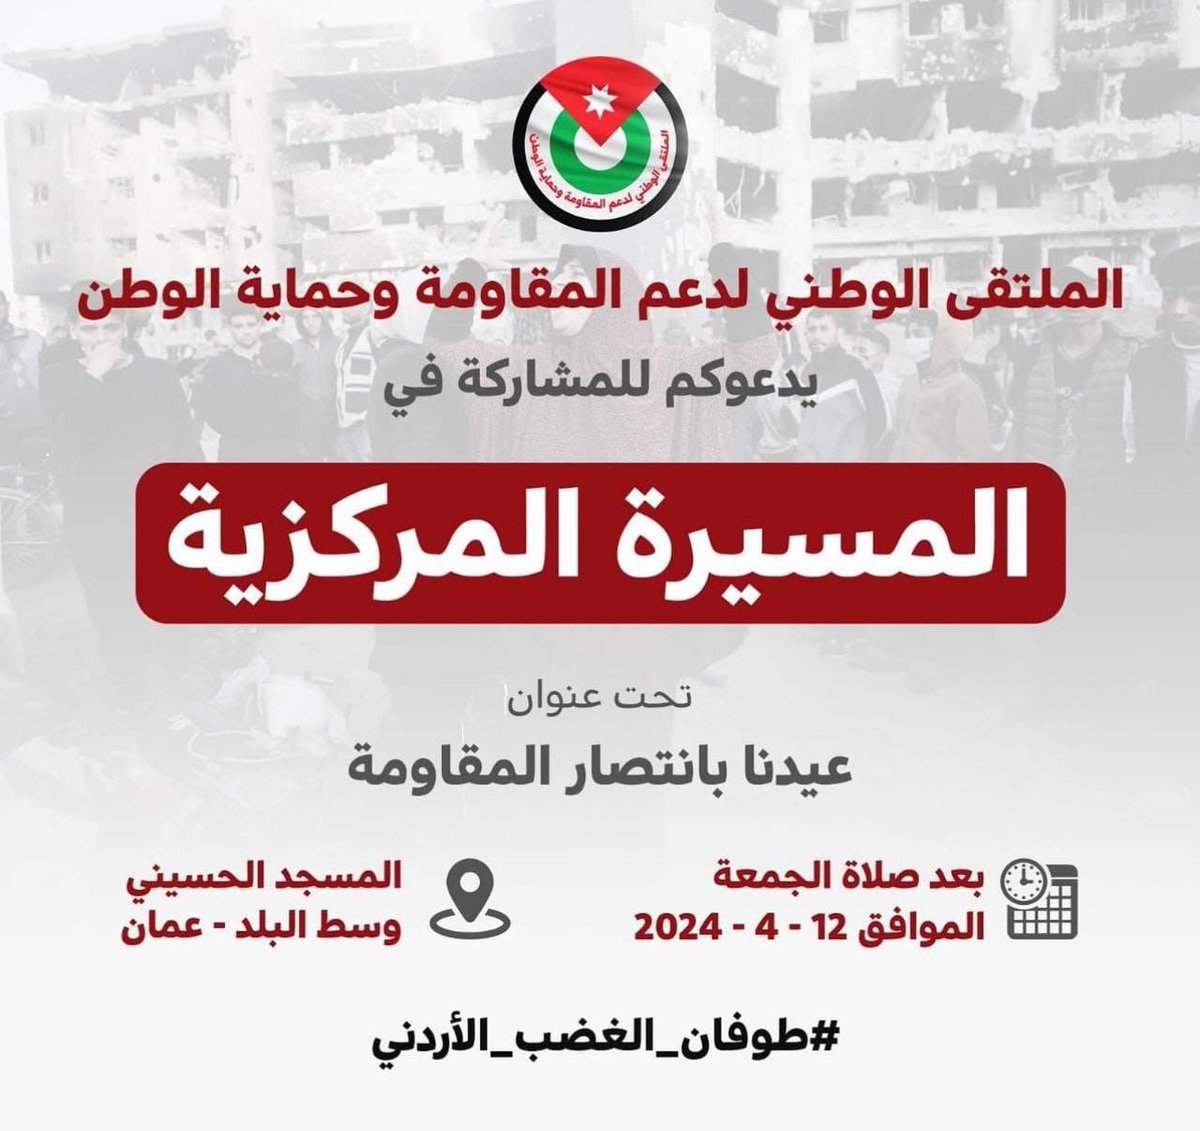 دعوات للاحتشاد #اليوم بعد صلاة الجمعة في وسط البلد في العاصمة الأردنية عمّان؛ نصرةً لغزة ودعماً للمقاومة.